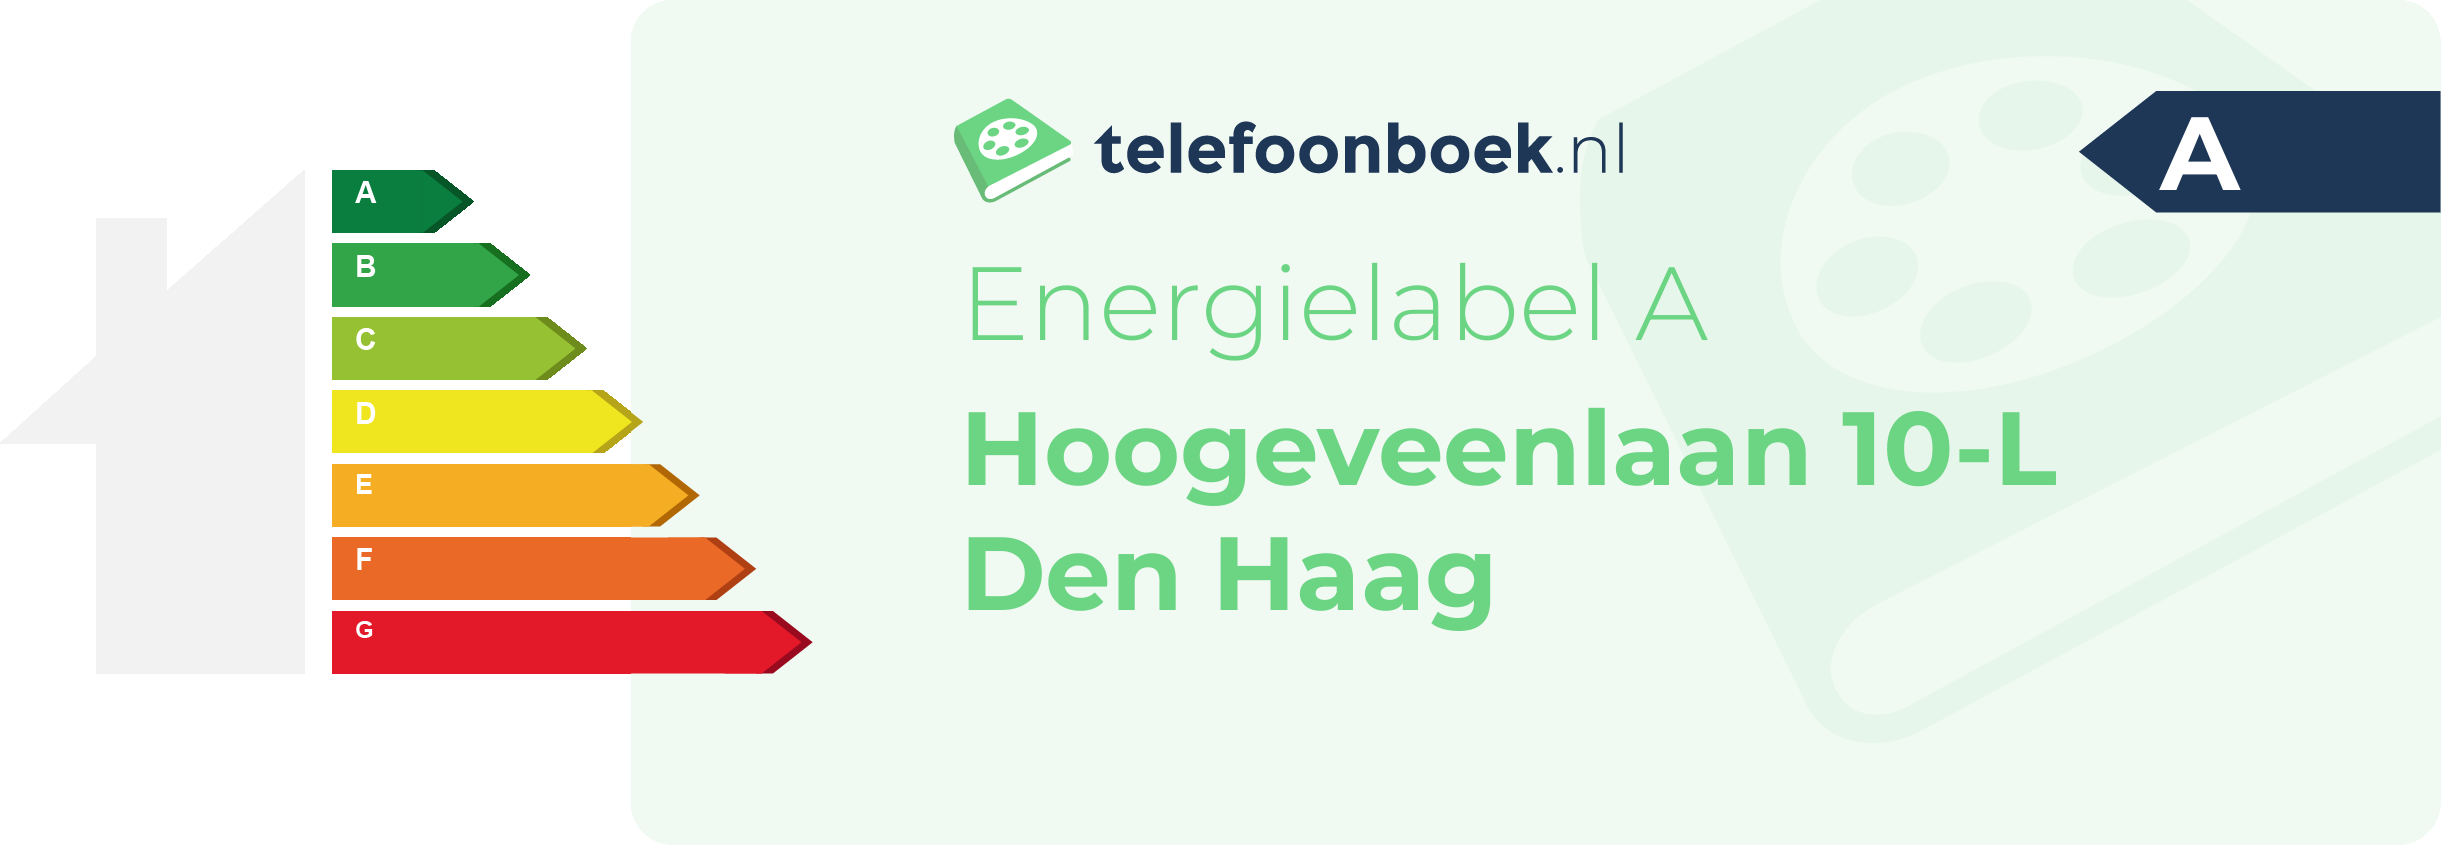 Energielabel Hoogeveenlaan 10-L Den Haag